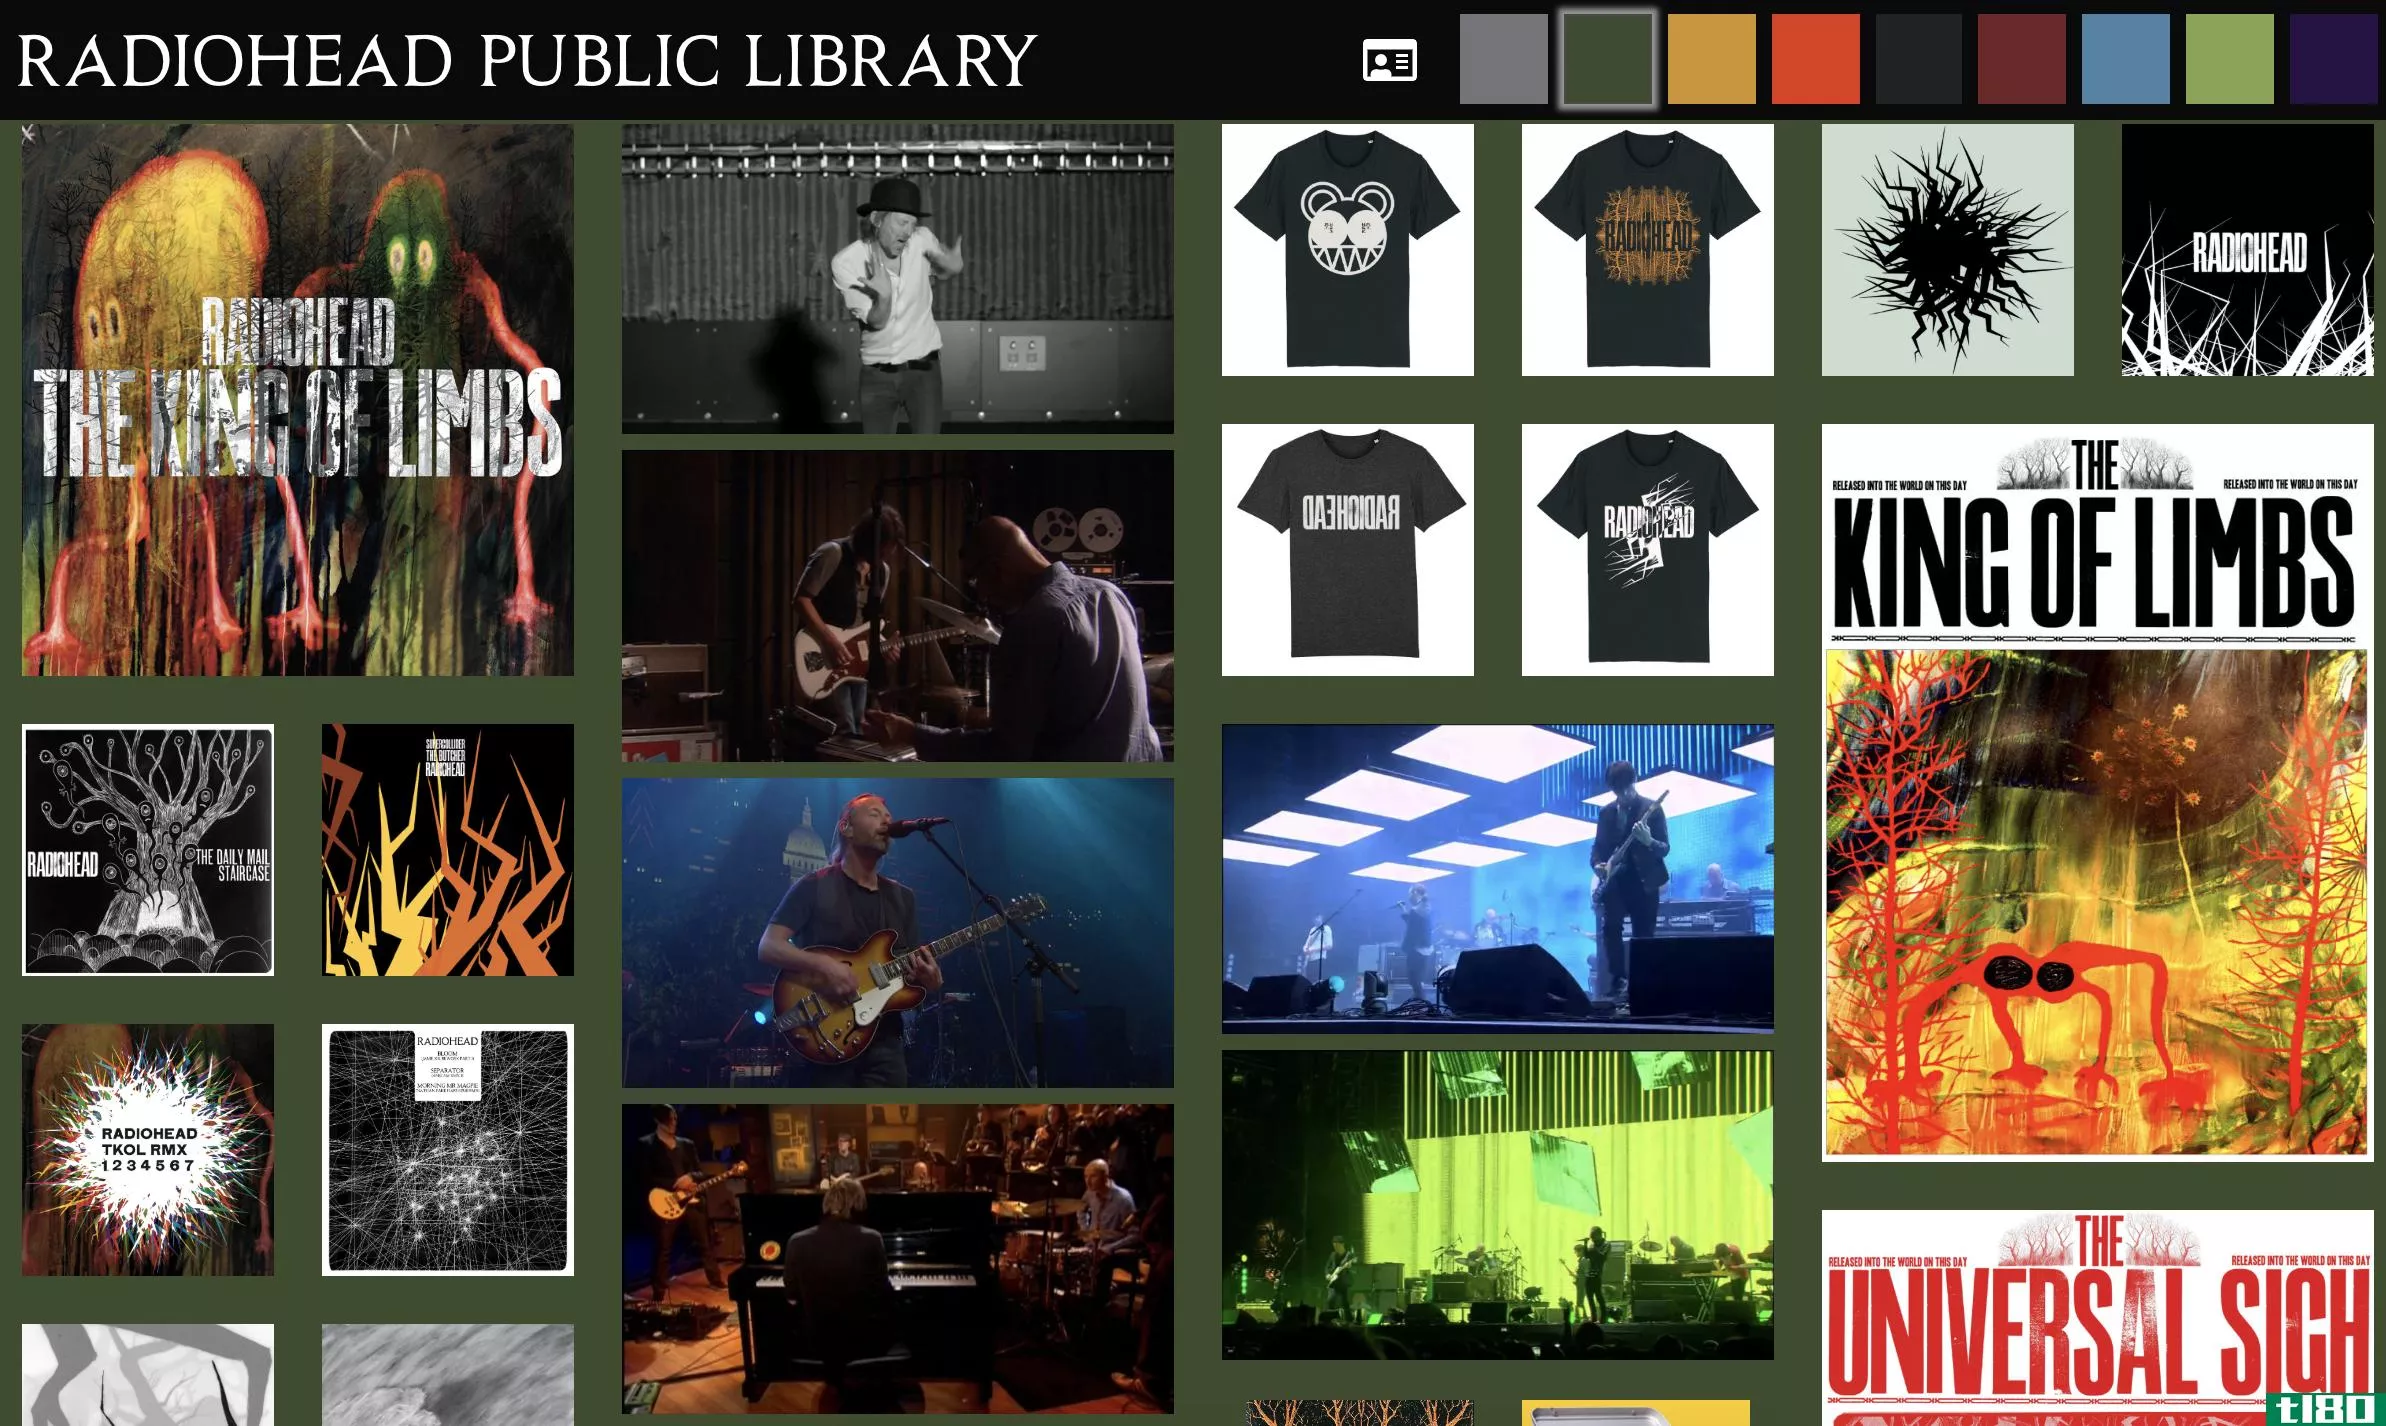 radiohead推出了一个在线“公共图书馆”，里面有稀有的曲目和一张可打印的图书卡